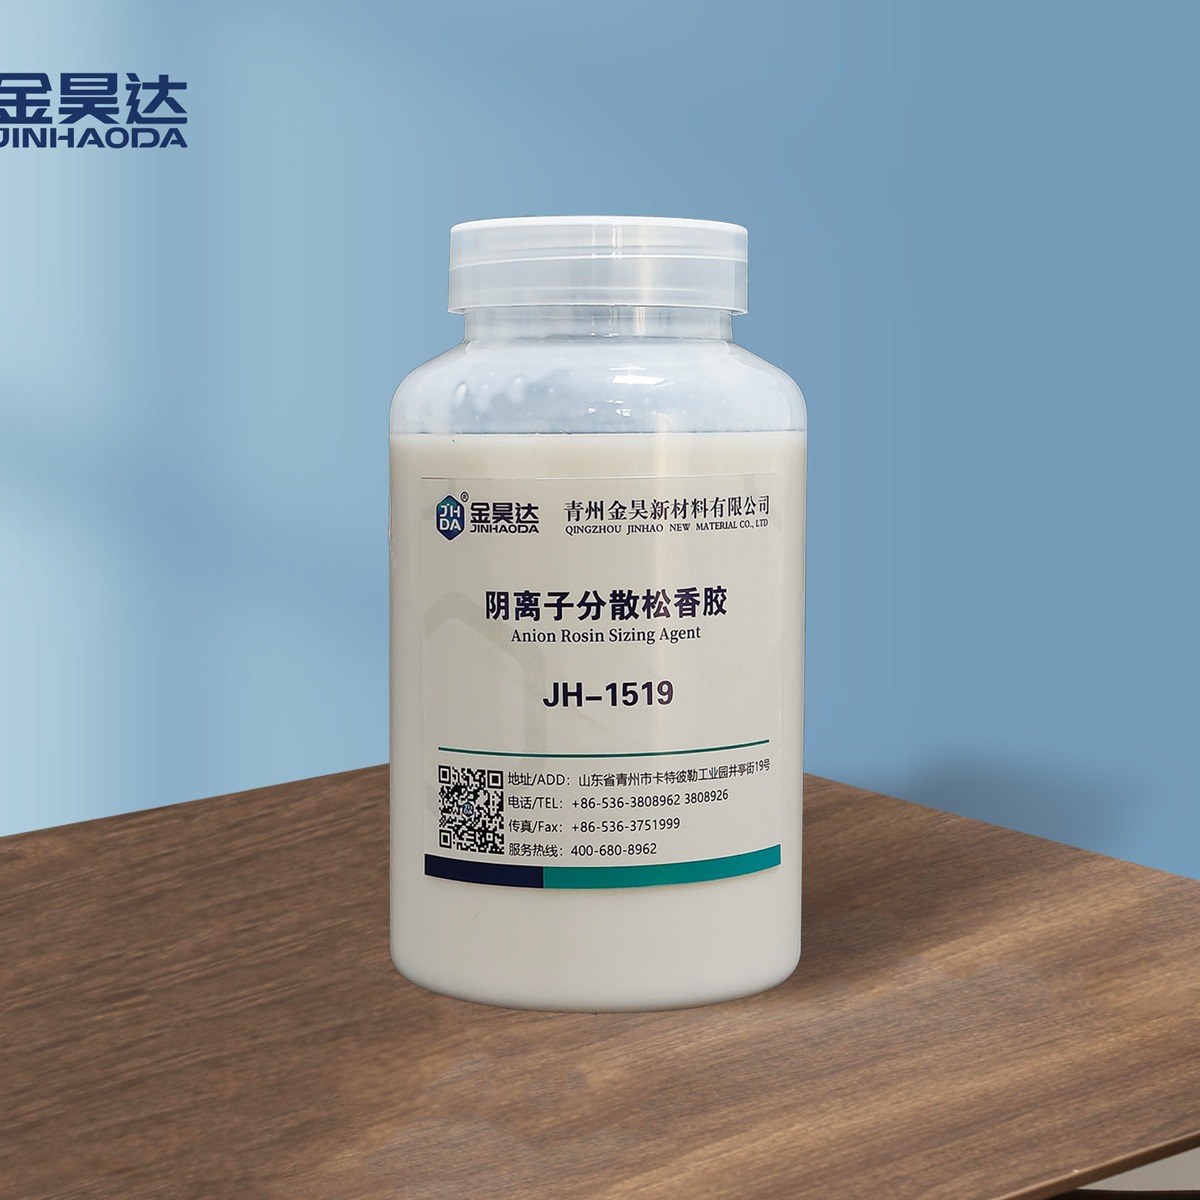 JH-1519阴离子松香胶 生产成本低 稳定效果好 阴离子松香胶乳液  厂家直售 山东金昊